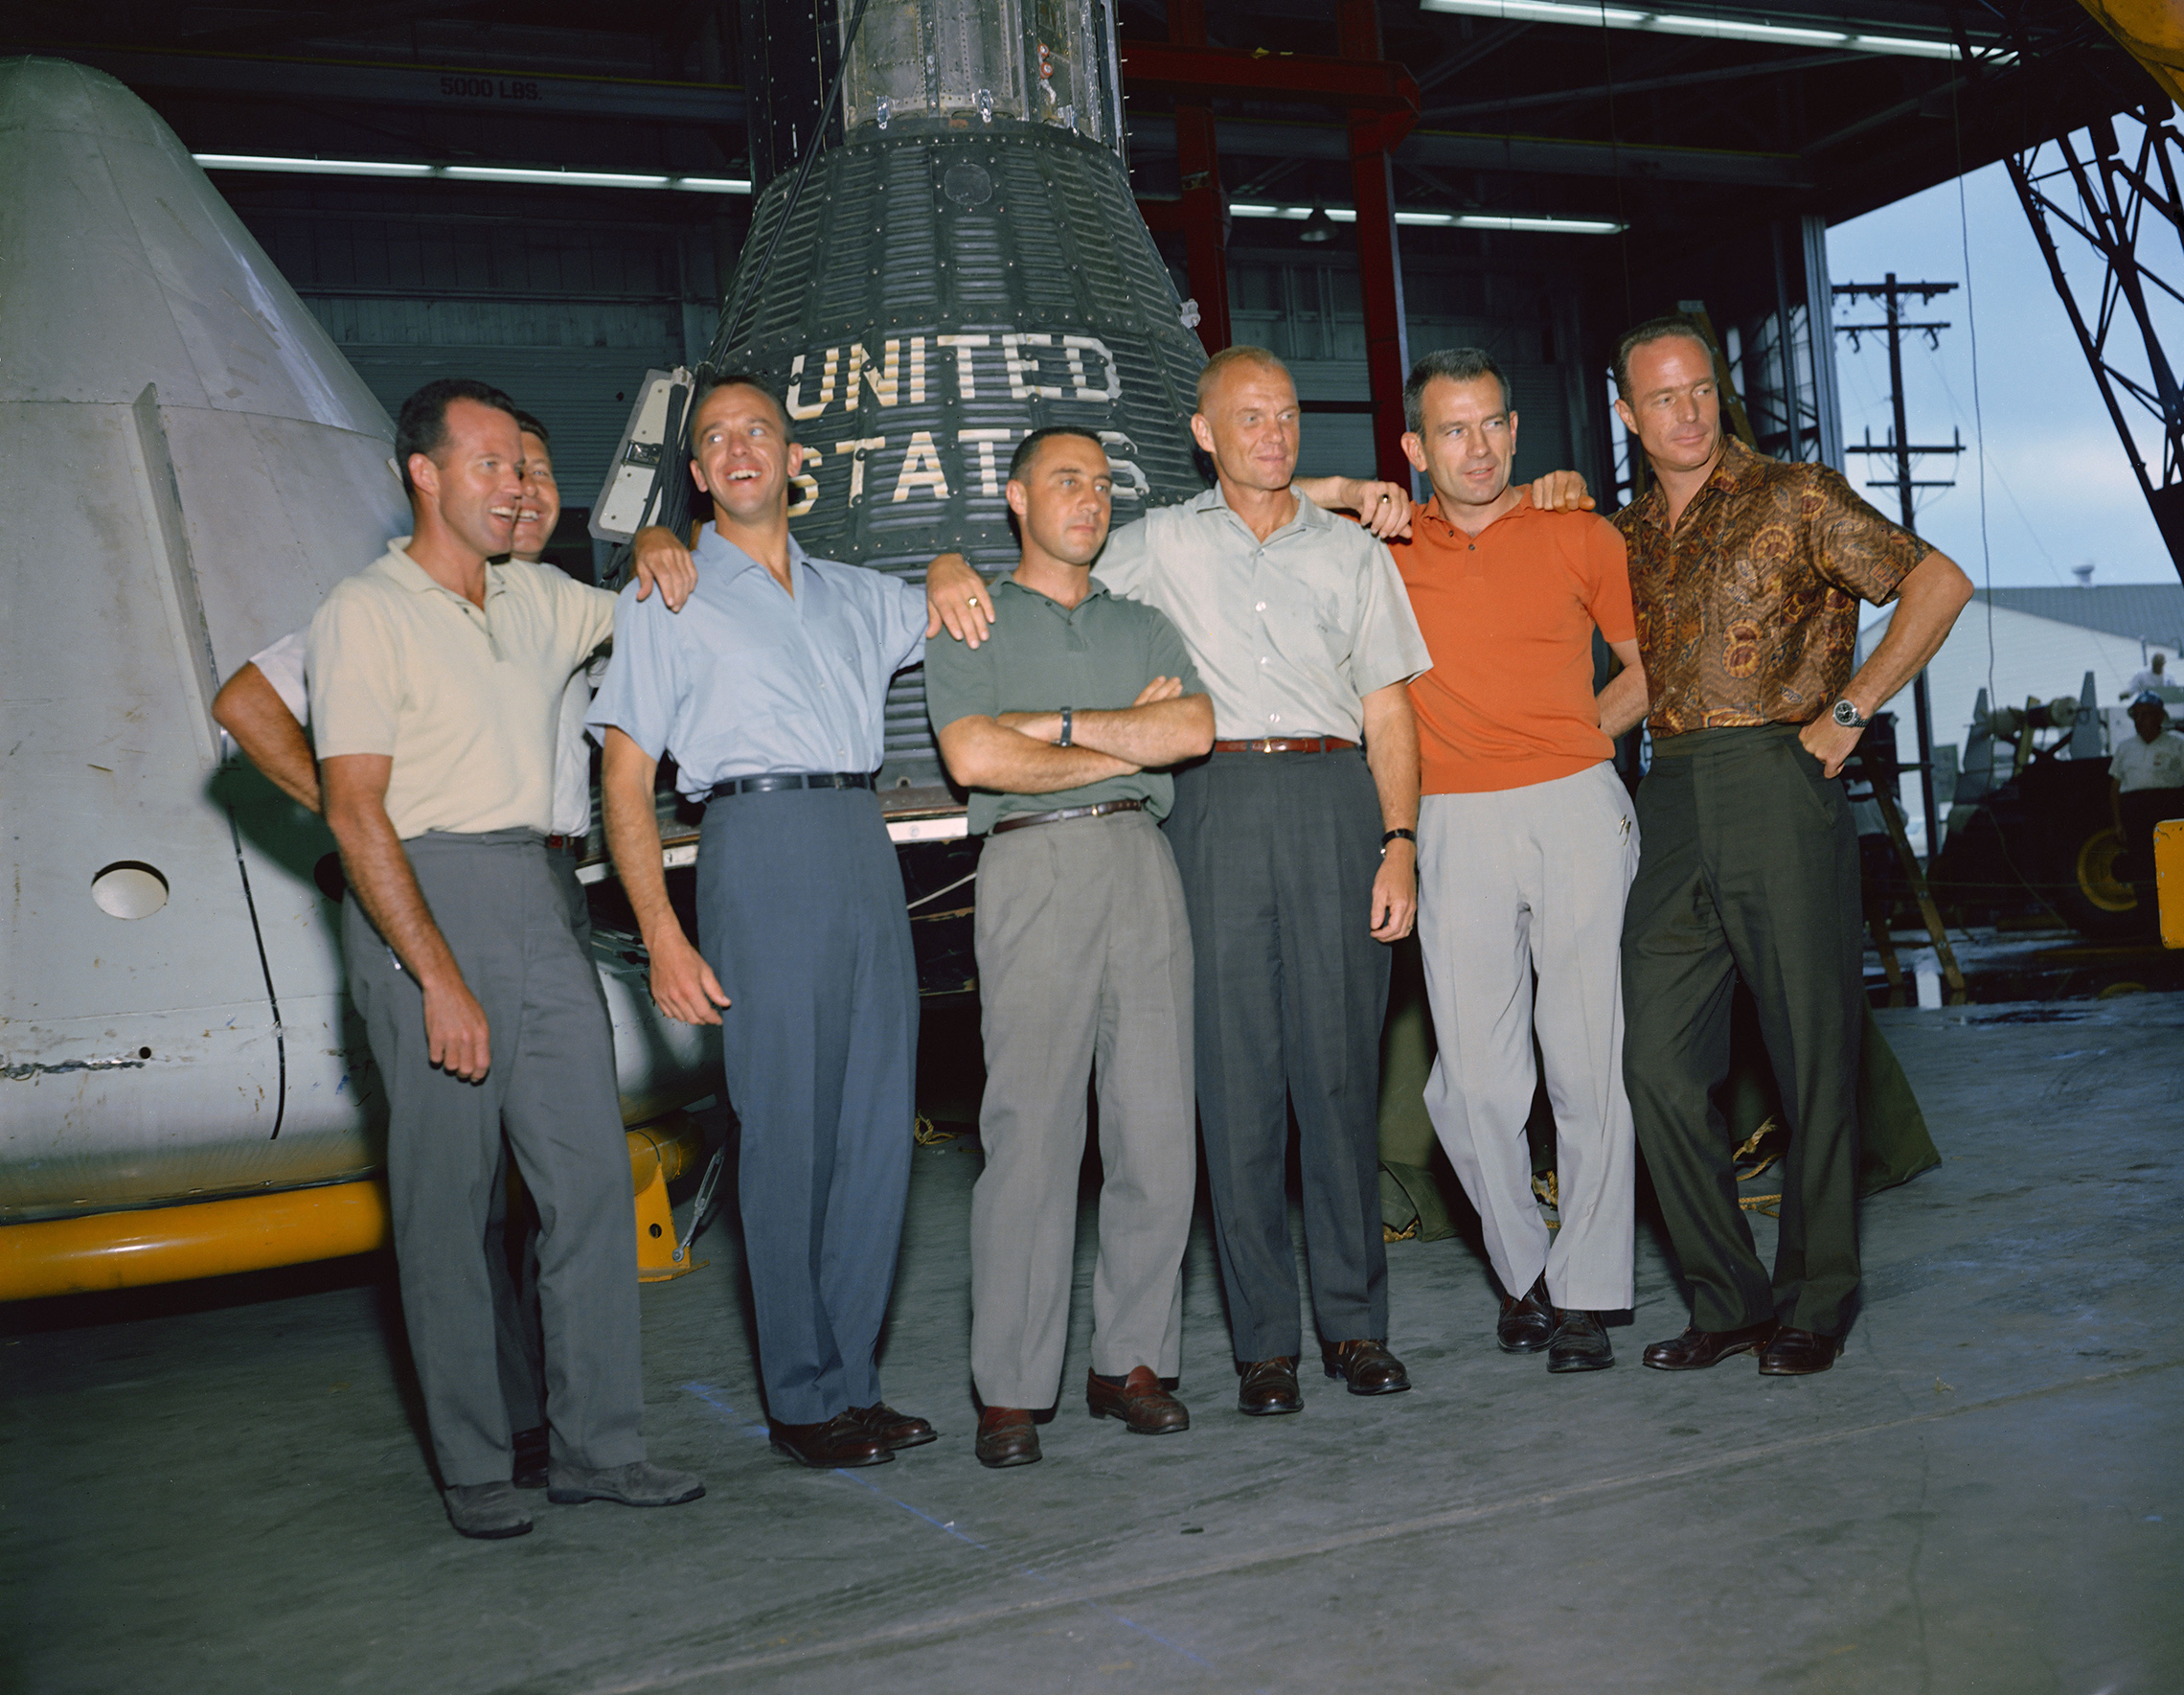 il 9 aprile 1959, la NASA primo amministratore, il Dr. Keith Glennan, ha annunciato i nomi dell'agenzia del primo gruppo di astronauti durante una conferenza stampa a Washington, DC, Ora conosciuti come i Sette, hanno incluso tre aviatori Navali, M. Scott Carpenter, Walter M. Schirra Jr, e Alan B. Shepard Jr; tre i piloti dell'Air Force, L. Gordon Cooper Jr, Virgilio I. (Gus) Grissom, e Donald K. (Deke) Slayton; insieme all'aviatore del Corpo dei Marines John H. Glenn Jr. Questa foto di gruppo degli astronauti Mercury originali è stata scattata nel giugno 1963 presso il Manned Spacecraft Center (MSC), ora Johnson Space Center, a Houston, in Texas. Gli astronauti sono, da sinistra a destra: Cooper, Schirra, Shepard, Grissom, Glenn, Slayton e Carpenter. Il progetto Mercury divenne la prima grande impresa della NASA. Gli obiettivi del programma erano di posizionare un veicolo spaziale umano in orbita attorno alla Terra, osservare le prestazioni degli astronauti in tali condizioni e recuperare in sicurezza l'astronauta e il veicolo spaziale. I voli di Mercurio hanno dimostrato che gli esseri umani potevano vivere e lavorare nello spazio, e hanno aperto la strada per i programmi Gemini e Apollo, nonché per tutti gli ulteriori voli spaziali umani. (NASA)'s first administrator, Dr. Keith Glennan, announced the names of the agency's first group of astronauts at a news conference in Washington, D.C. Now known as the "Original Seven," they included three Naval aviators, M. Scott Carpenter, Walter M. Schirra Jr., and Alan B. Shepard Jr.; three Air Force pilots, L. Gordon Cooper Jr., Virgil I. (Gus) Grissom, and Donald K. (Deke) Slayton; along with Marine Corps aviator John H. Glenn Jr. This group photo of the original Mercury astronauts was taken in June 1963 at the Manned Spacecraft Center (MSC), now Johnson Space Center, in Houston, Texas. The astronauts are, left to right: Cooper, Schirra, Shepard, Grissom, Glenn, Slayton and Carpenter. Project Mercury became NASA's first major undertaking. The objectives of the program were to place a human-rated spacecraft into orbit around Earth, observe the astronauts' performance in such conditions and safely recover the astronaut and the spacecraft. The Mercury flights proved that humans could live and work in space, and paved the way for the Gemini and Apollo programs as well as for all further human spaceflight. (NASA)